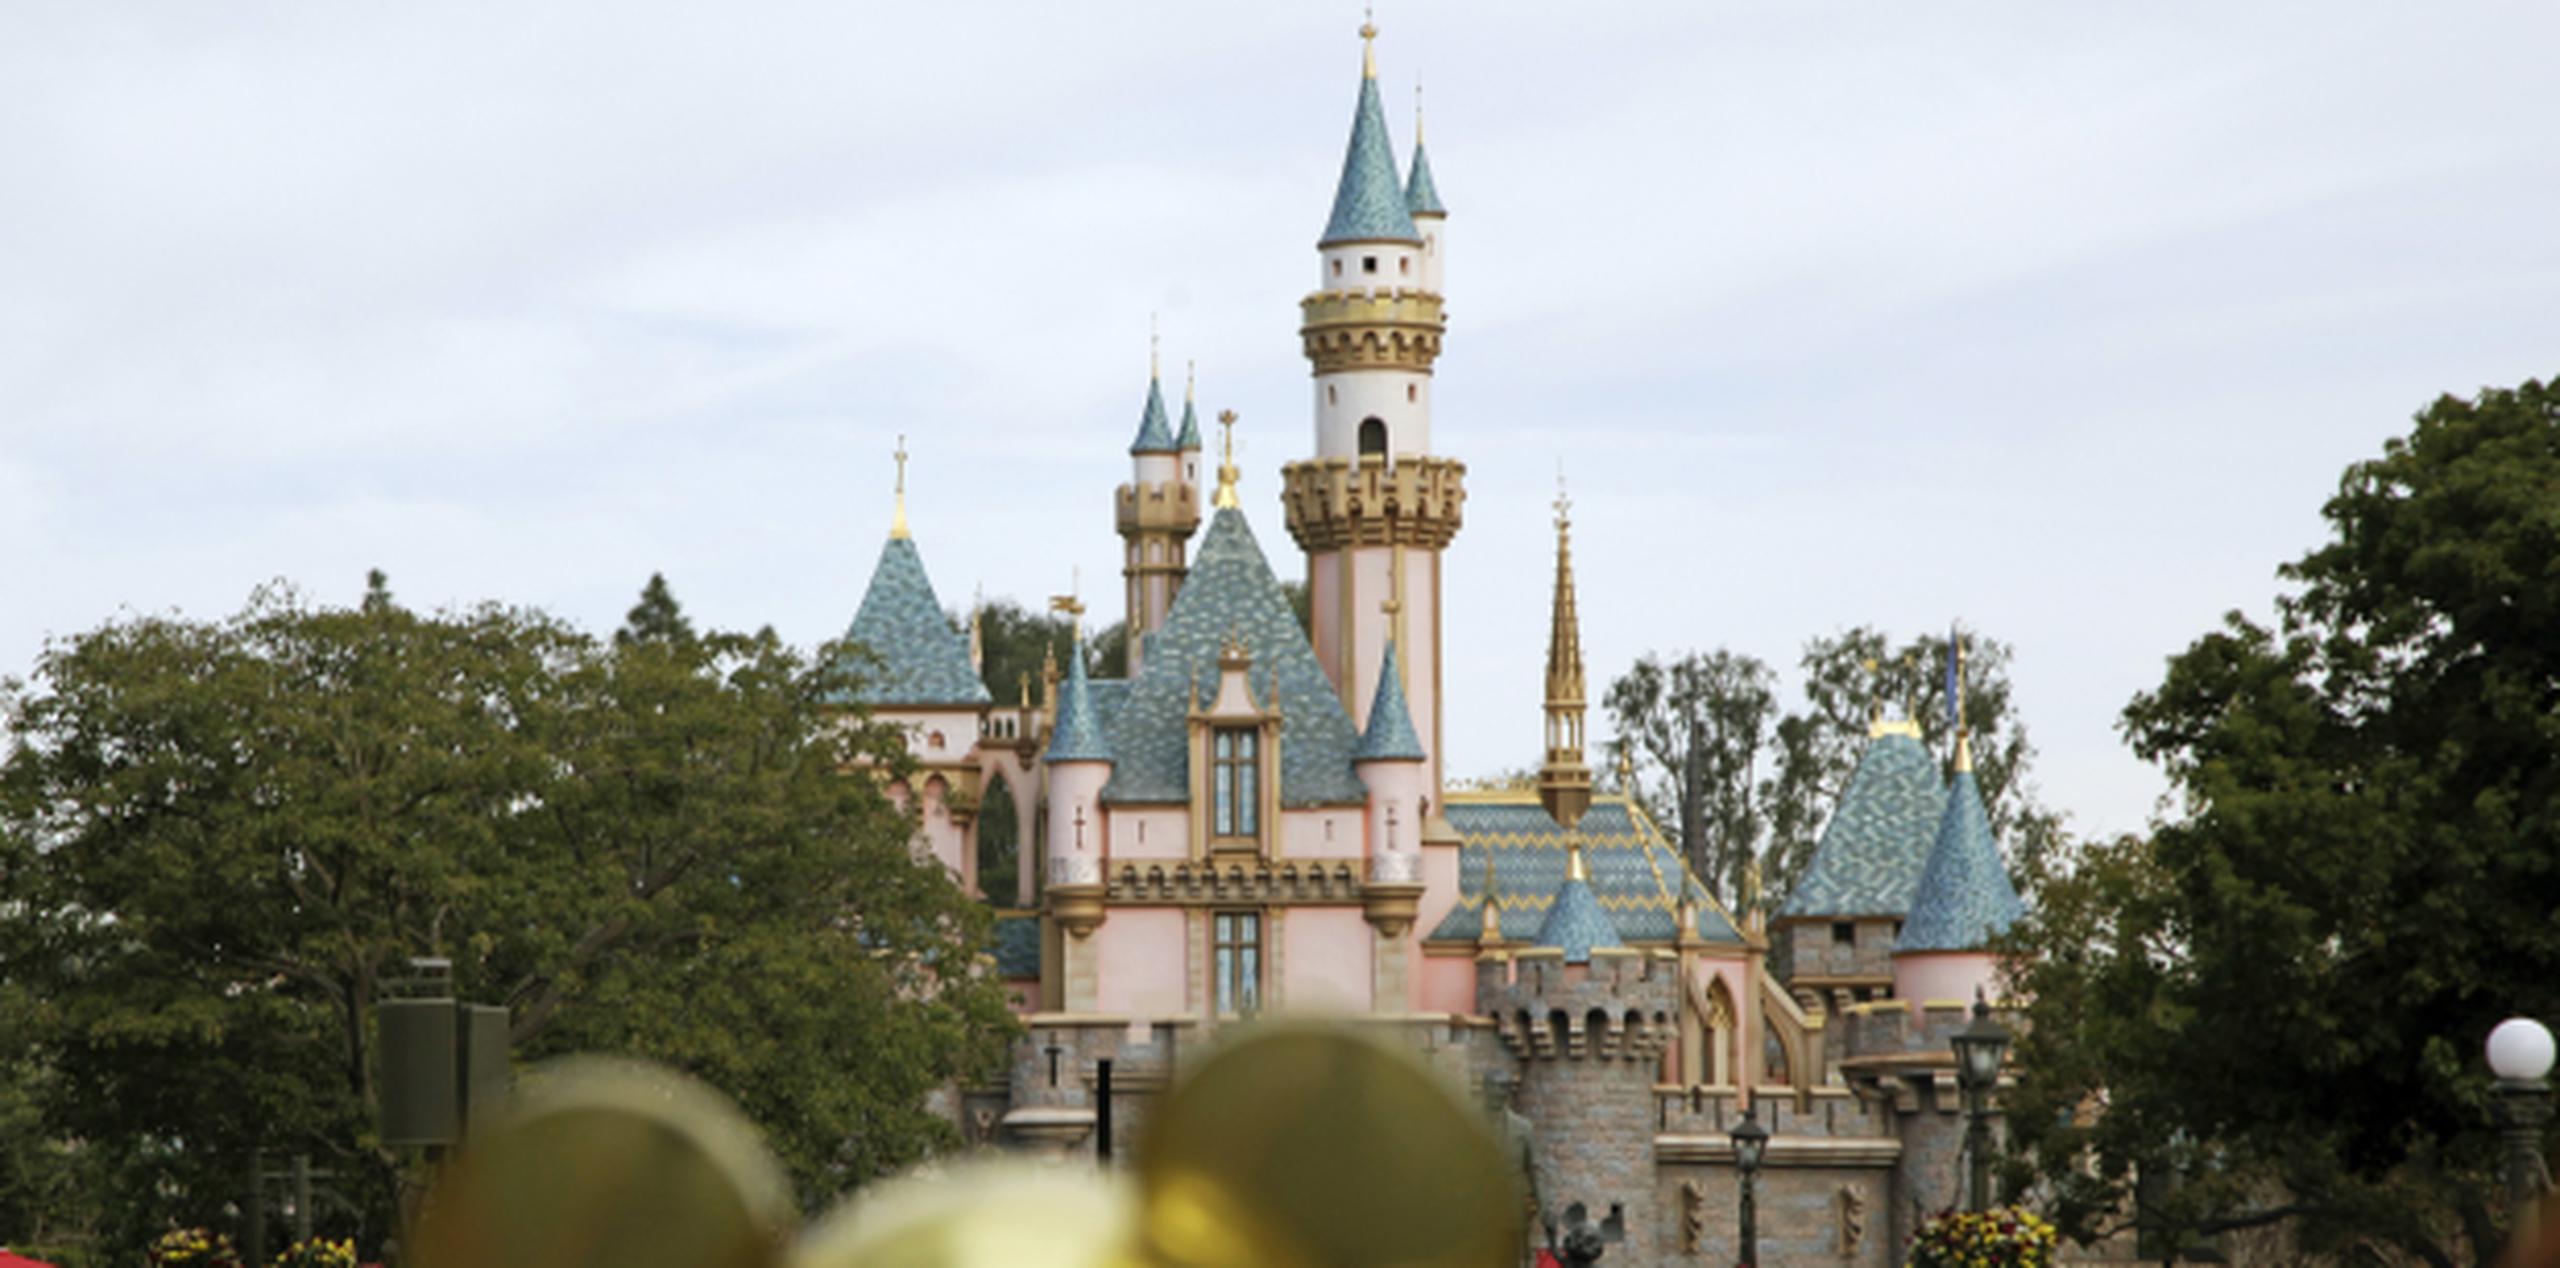 El problema estuvo relacionado con un transformador en Disneyland Resort. (Archivo)